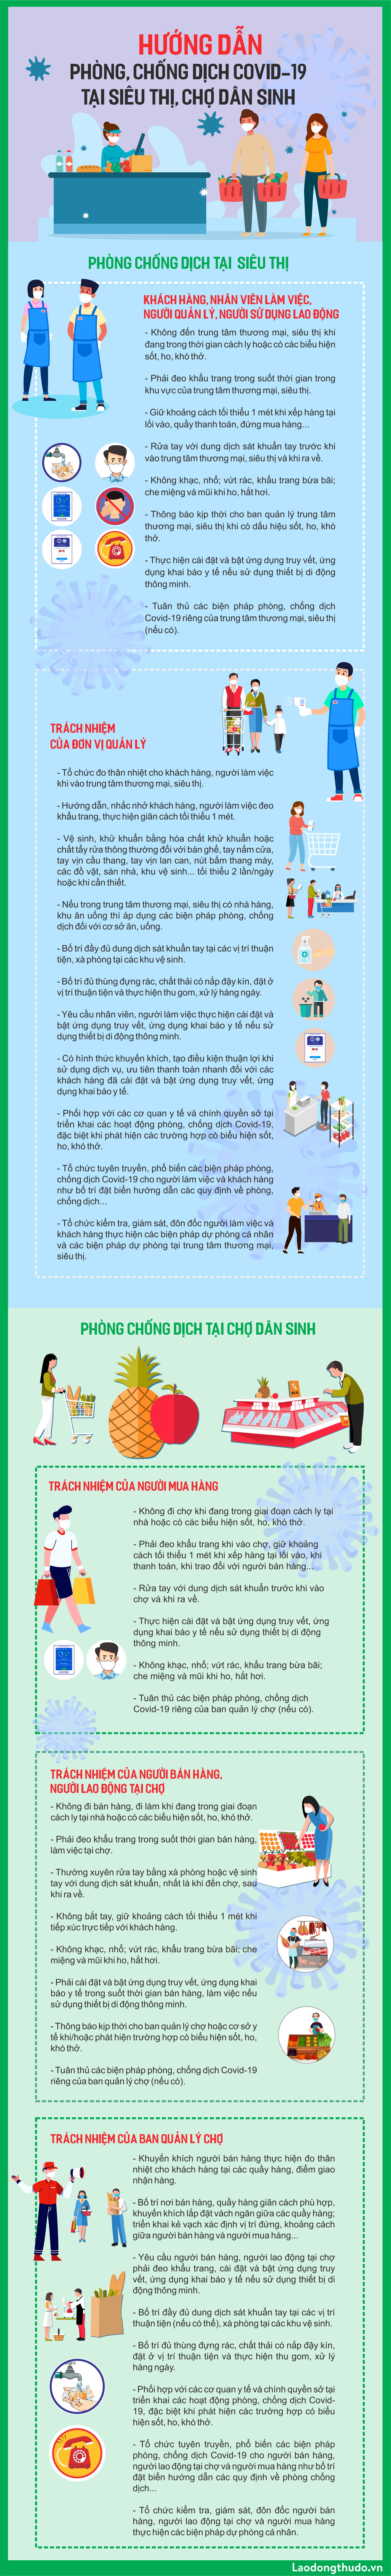 Infographic: Hướng dẫn công tác phòng, chống dịch tại siêu thị, chợ dân sinh